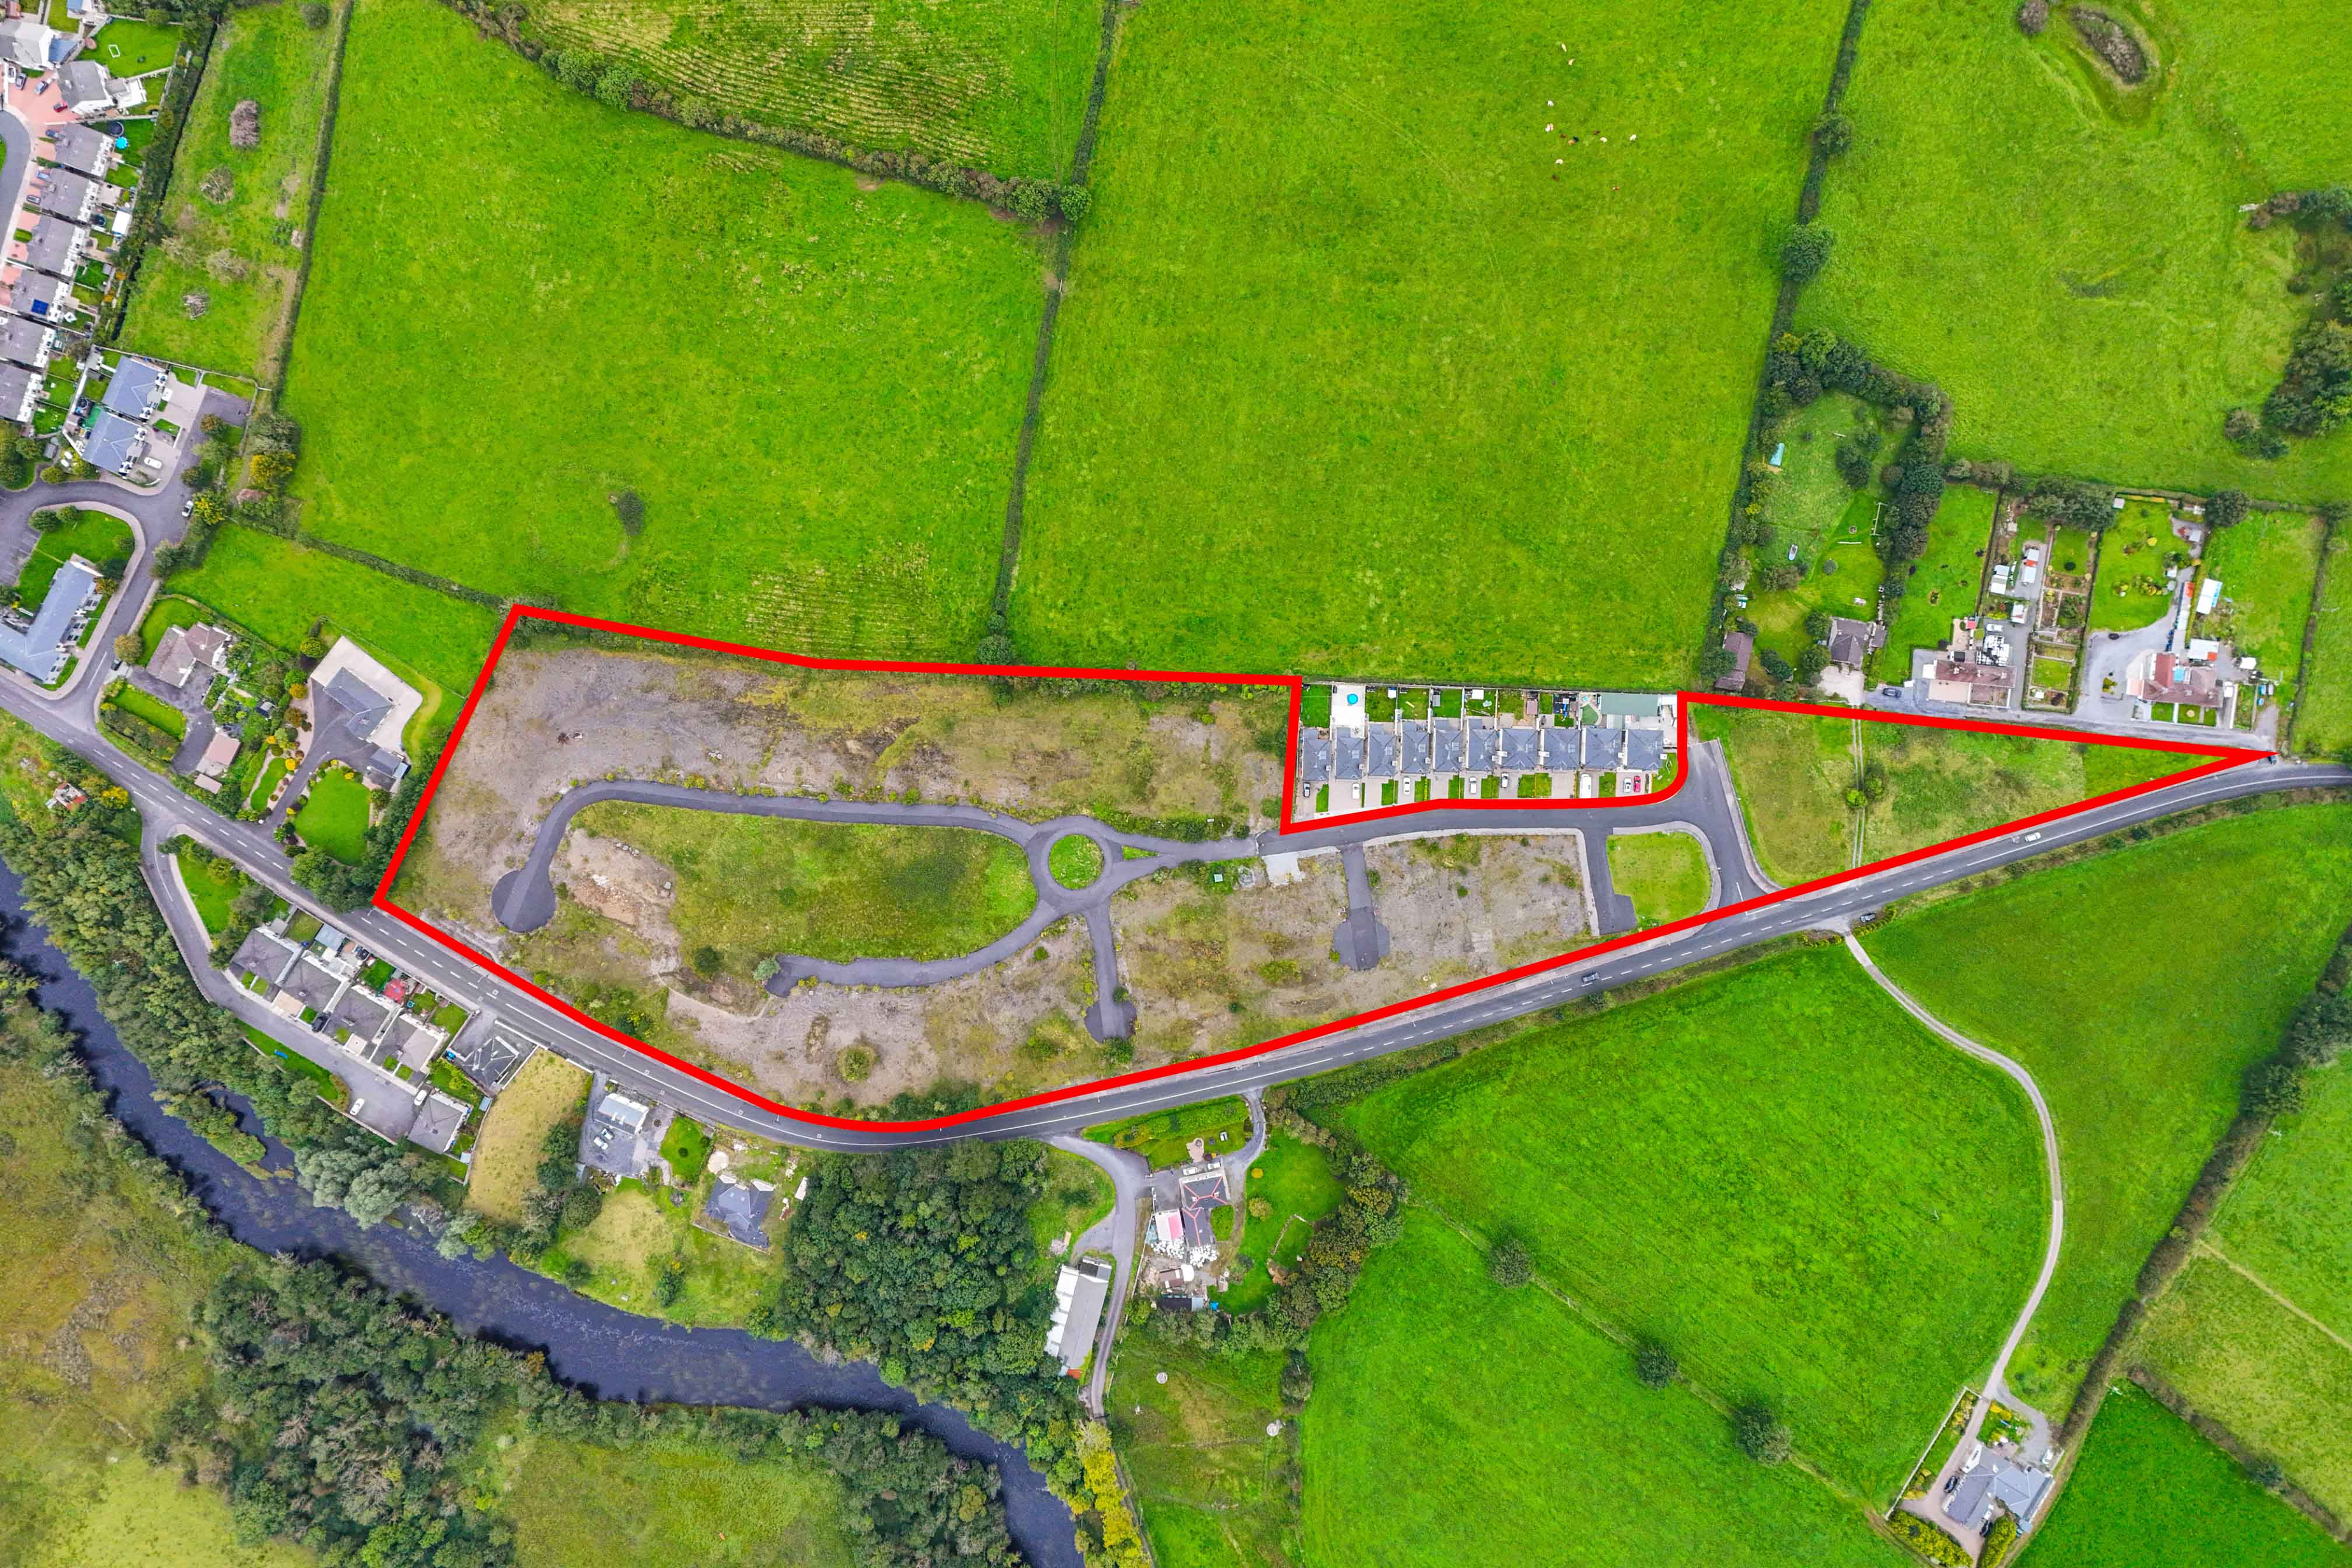 Development Site at Ivy Grove, Collooney, Co. Sligo, Ireland